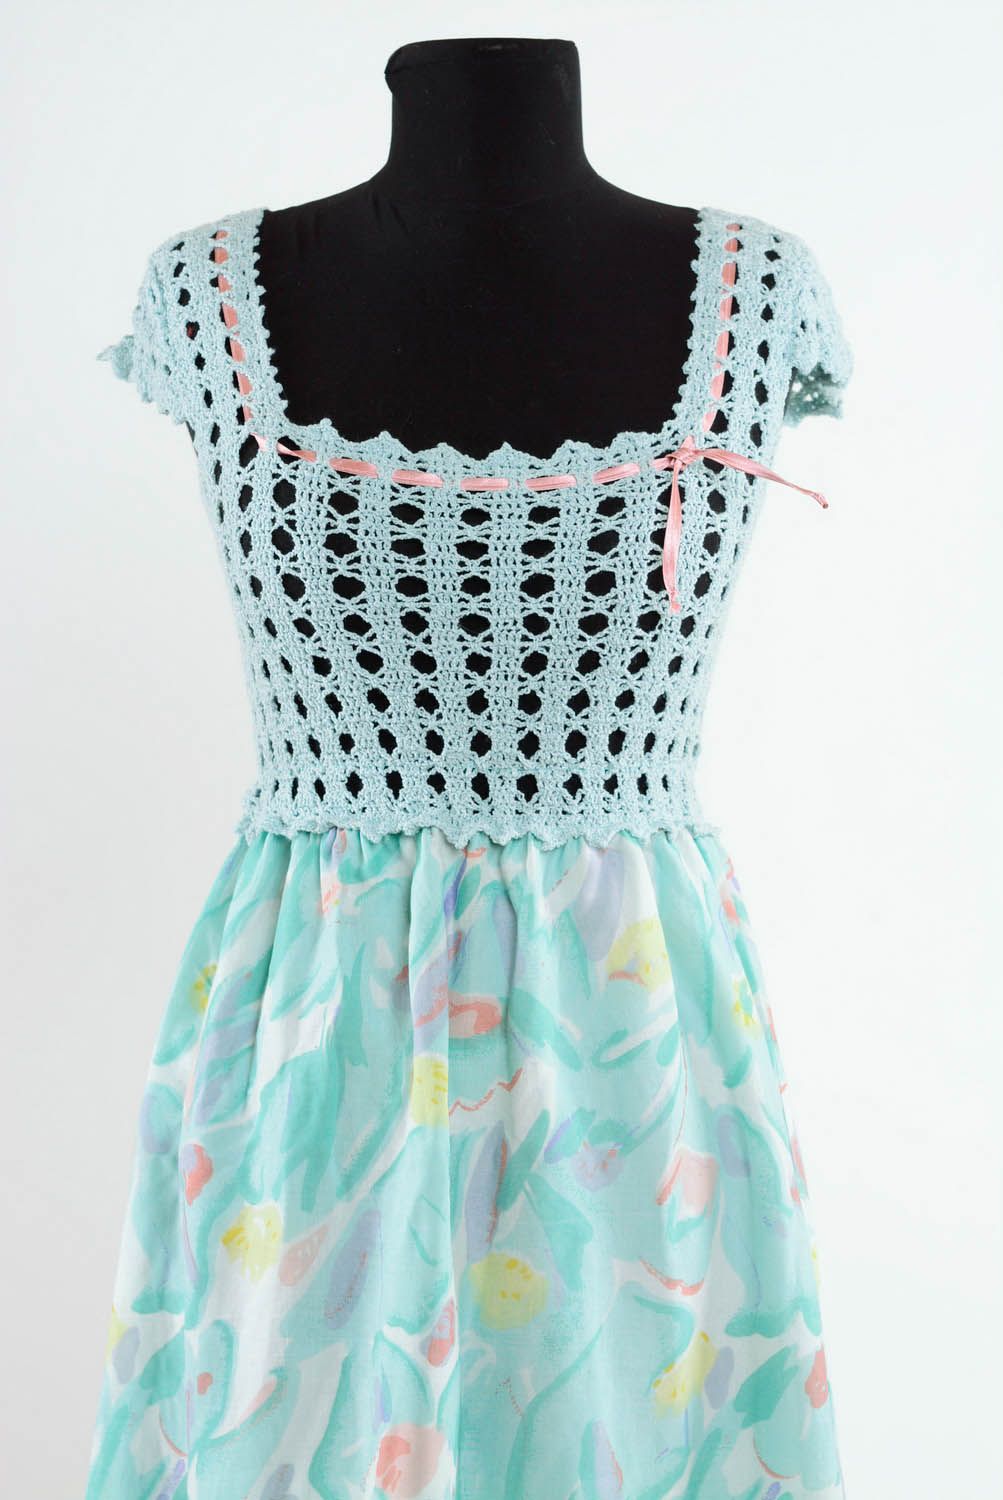 Summer crocheted dress photo 2